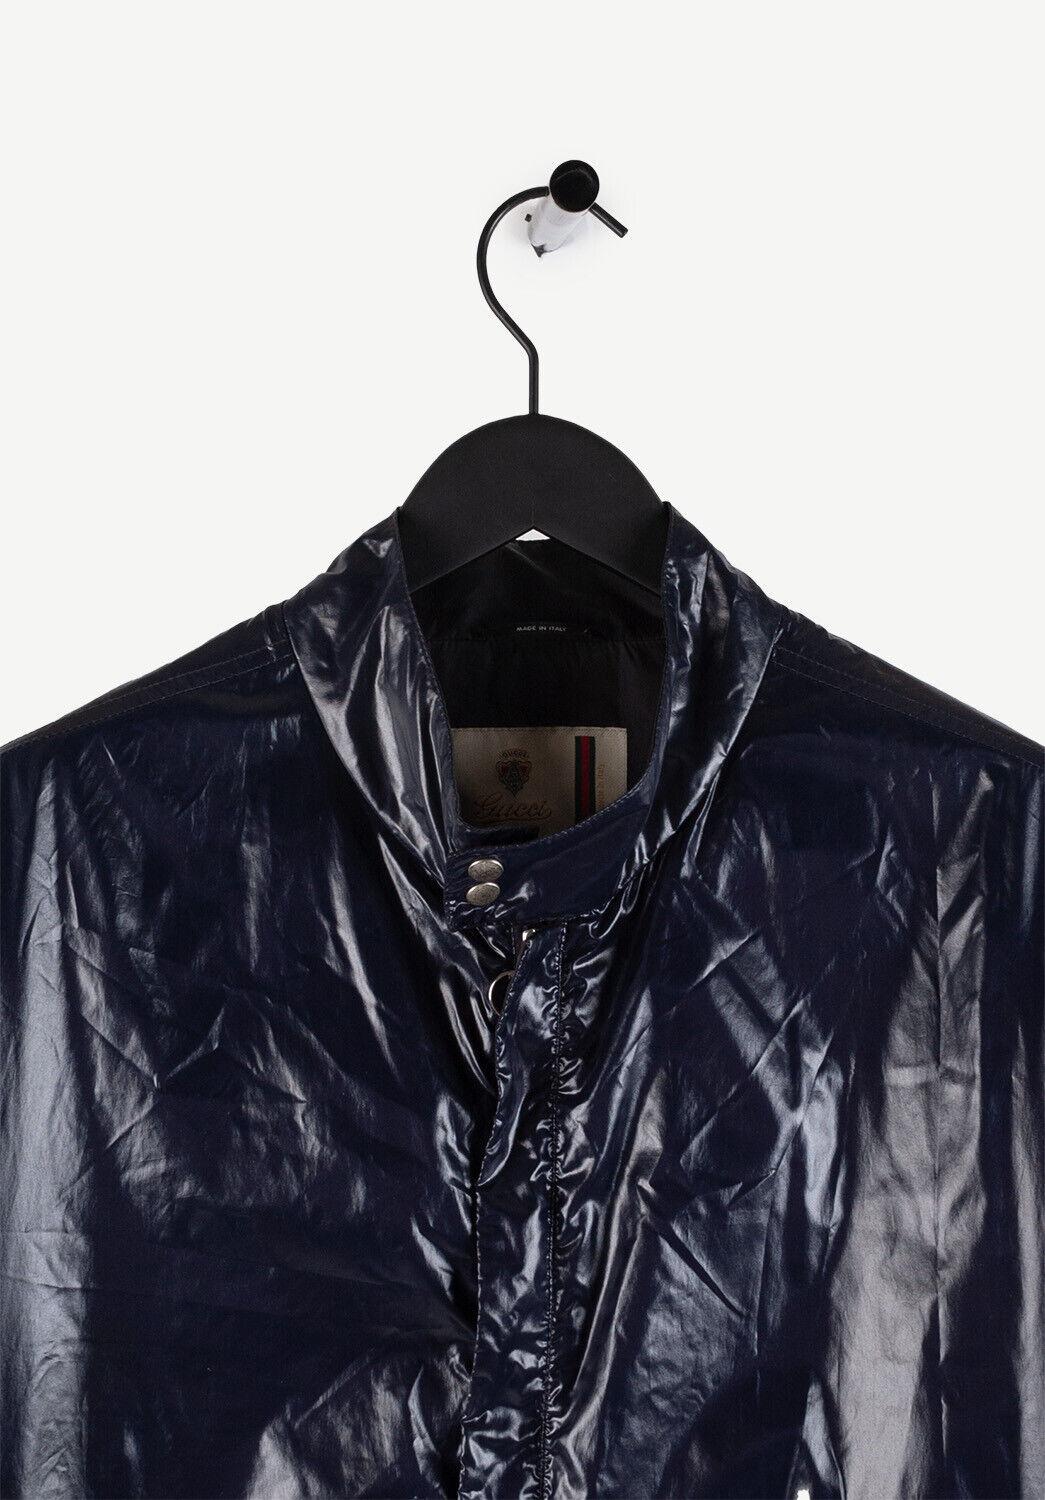  100% echte Gucci Herren Jacke, S340
Farbe: Marineblau
MATERIAL: 99% Polyamid, 1% Polyurethan
Tag Größe: 48IT(M)
Diese Jacke ist von hervorragender Qualität. Bewertung 8,5 von 10 sehr guter Zustand.
Tatsächliche Maße (Zoll/Zentimeter):
Brustkorb von